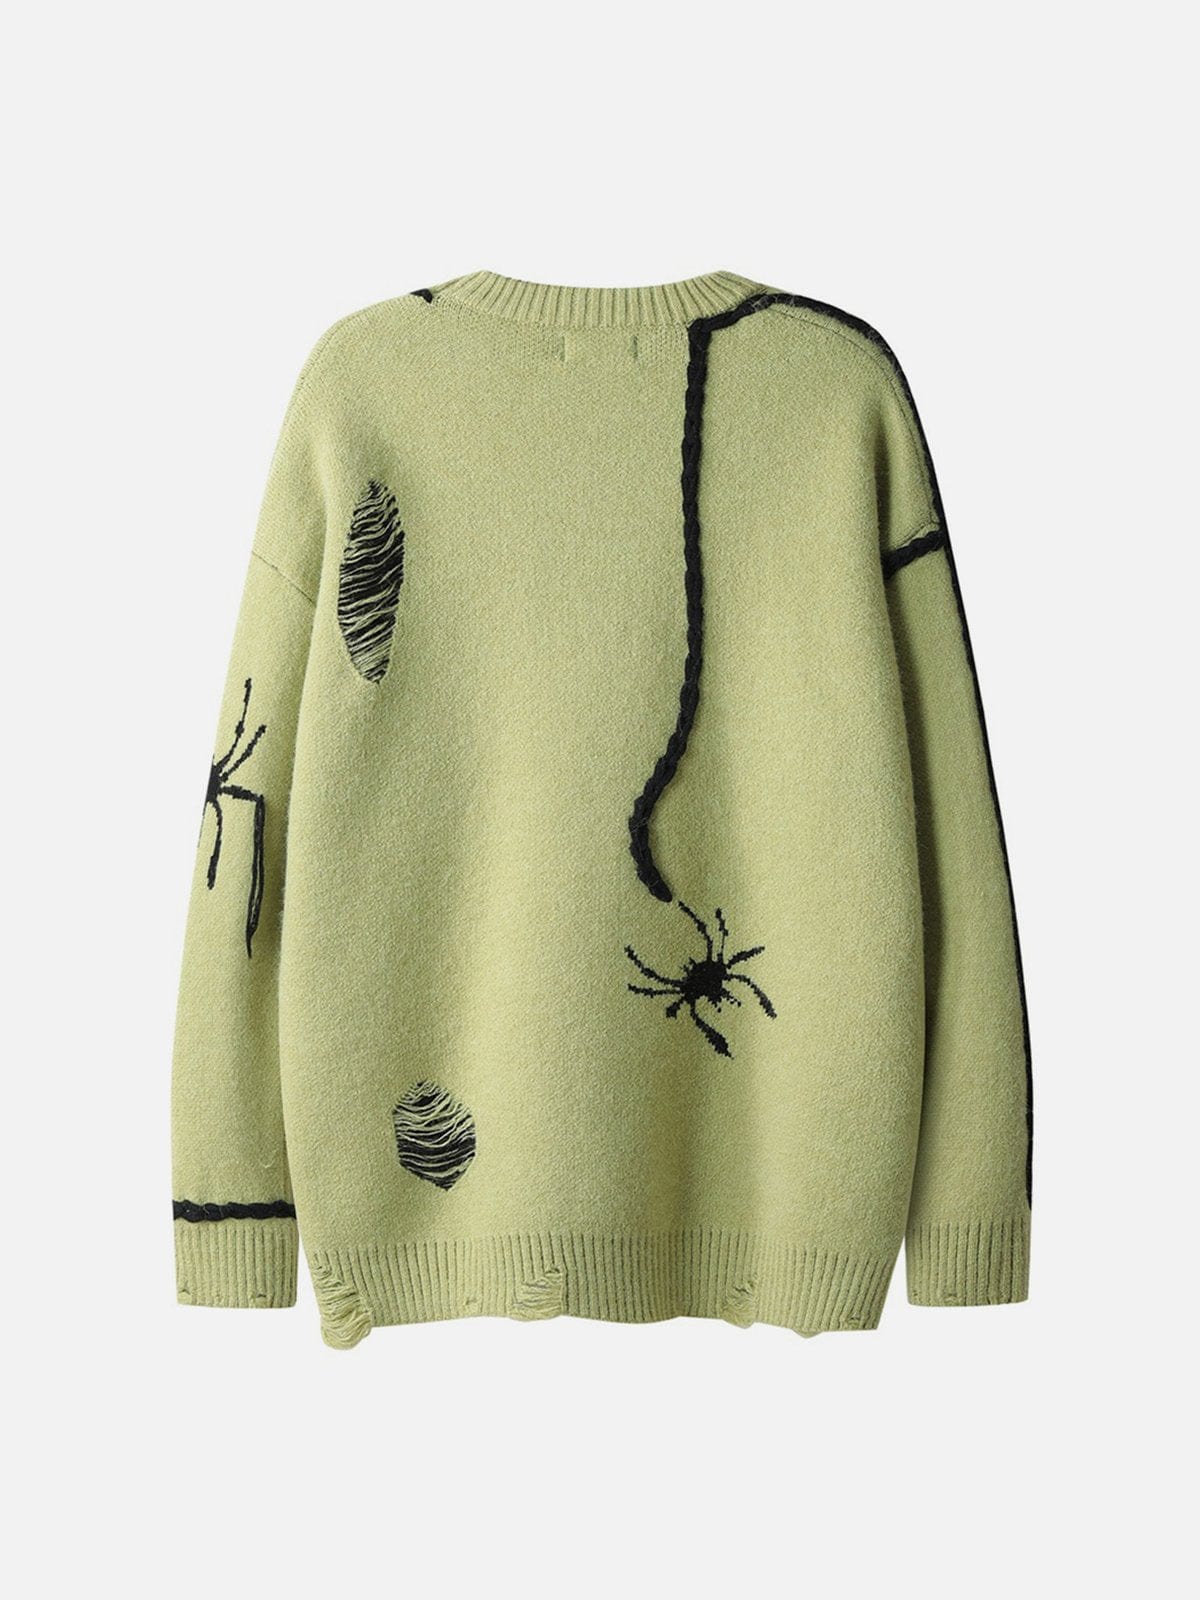 Spider Tassel Sweater